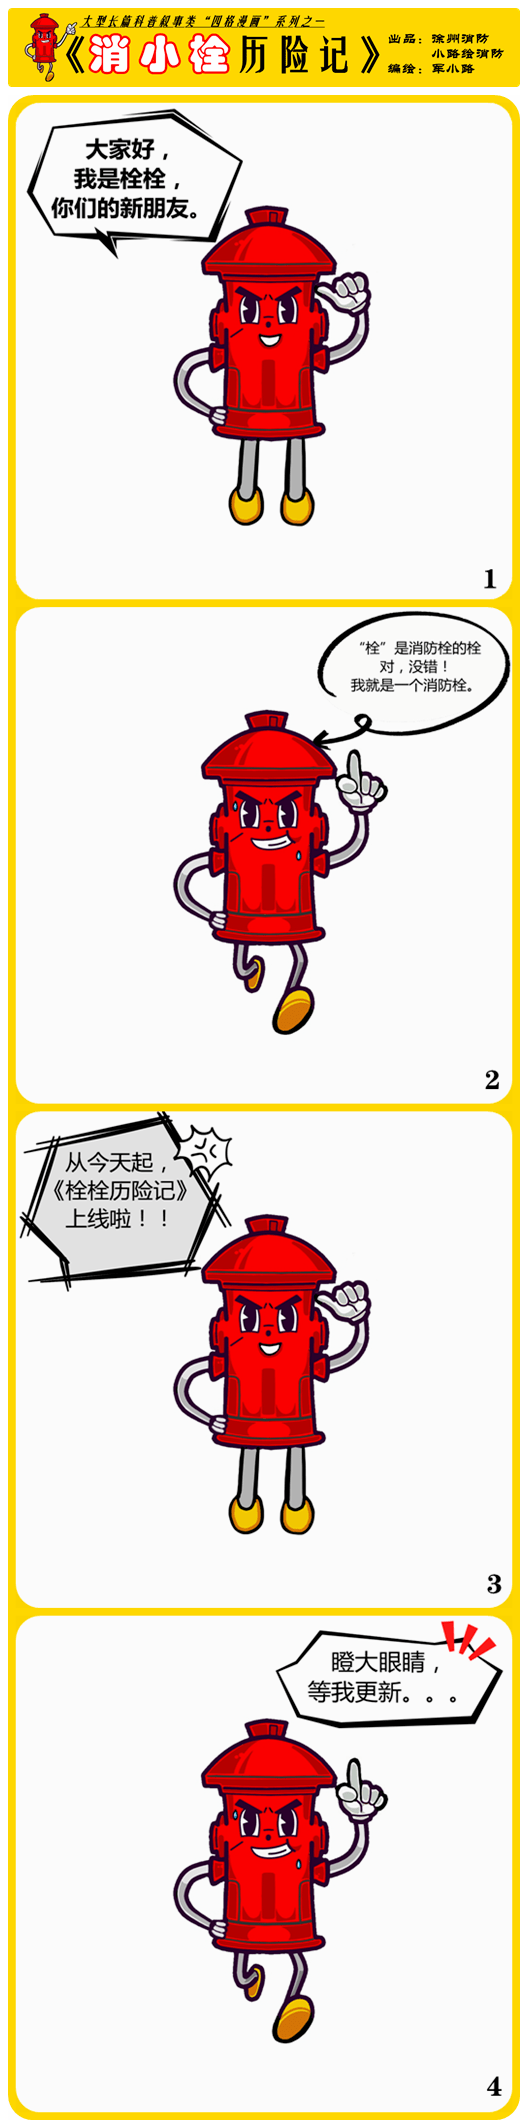 消防四格漫画简笔画图片